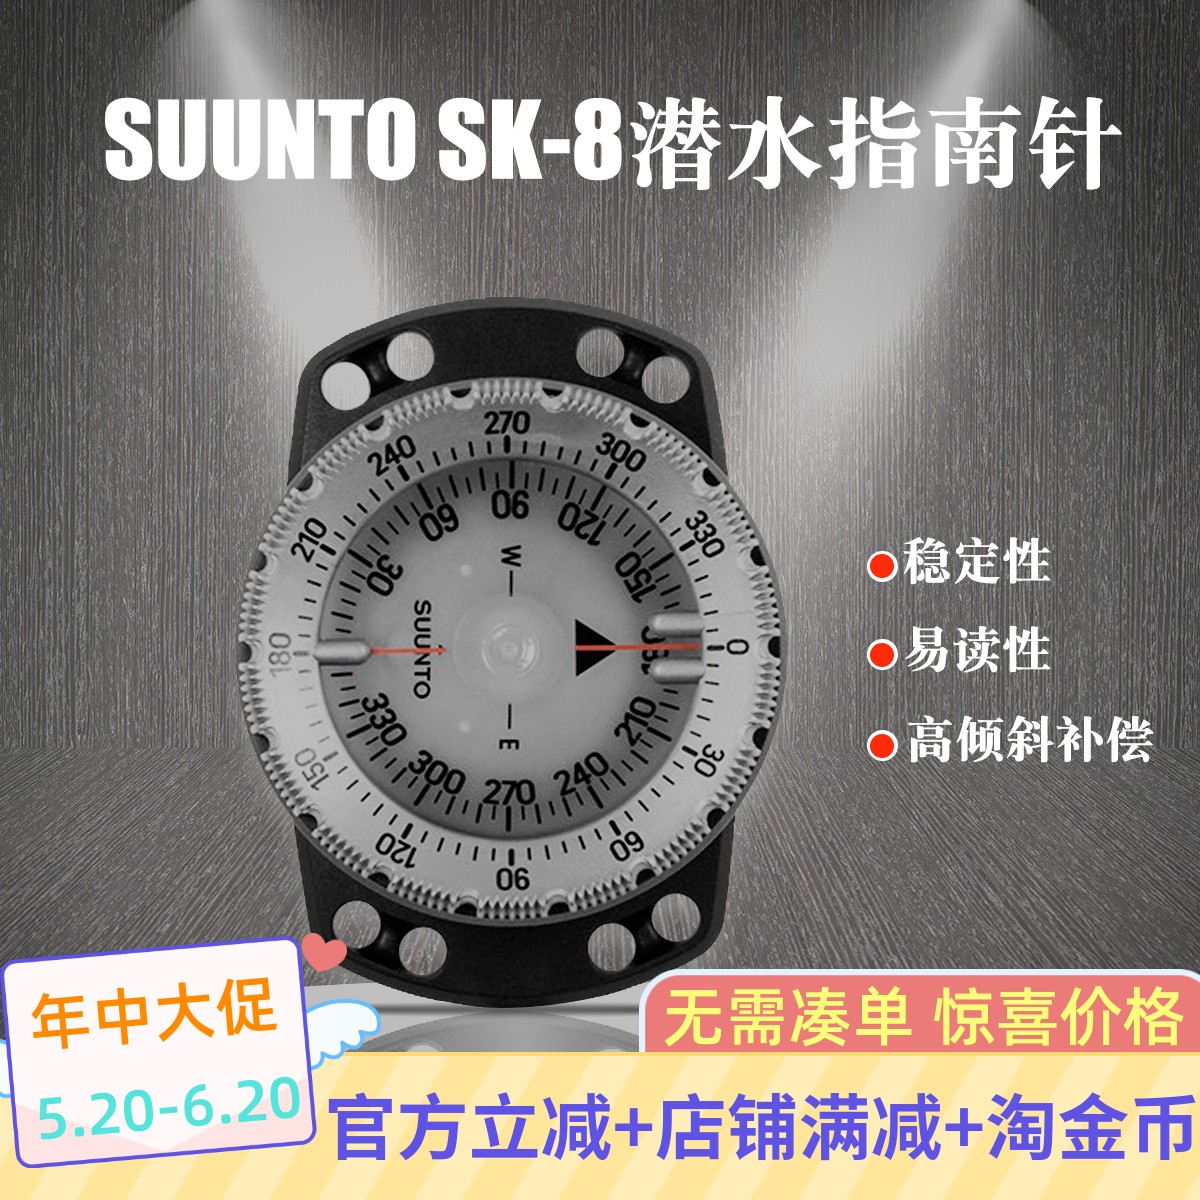 松拓SUUNTO SK-8 Compass潜水导航指南针手腕式指北针带夜光功能